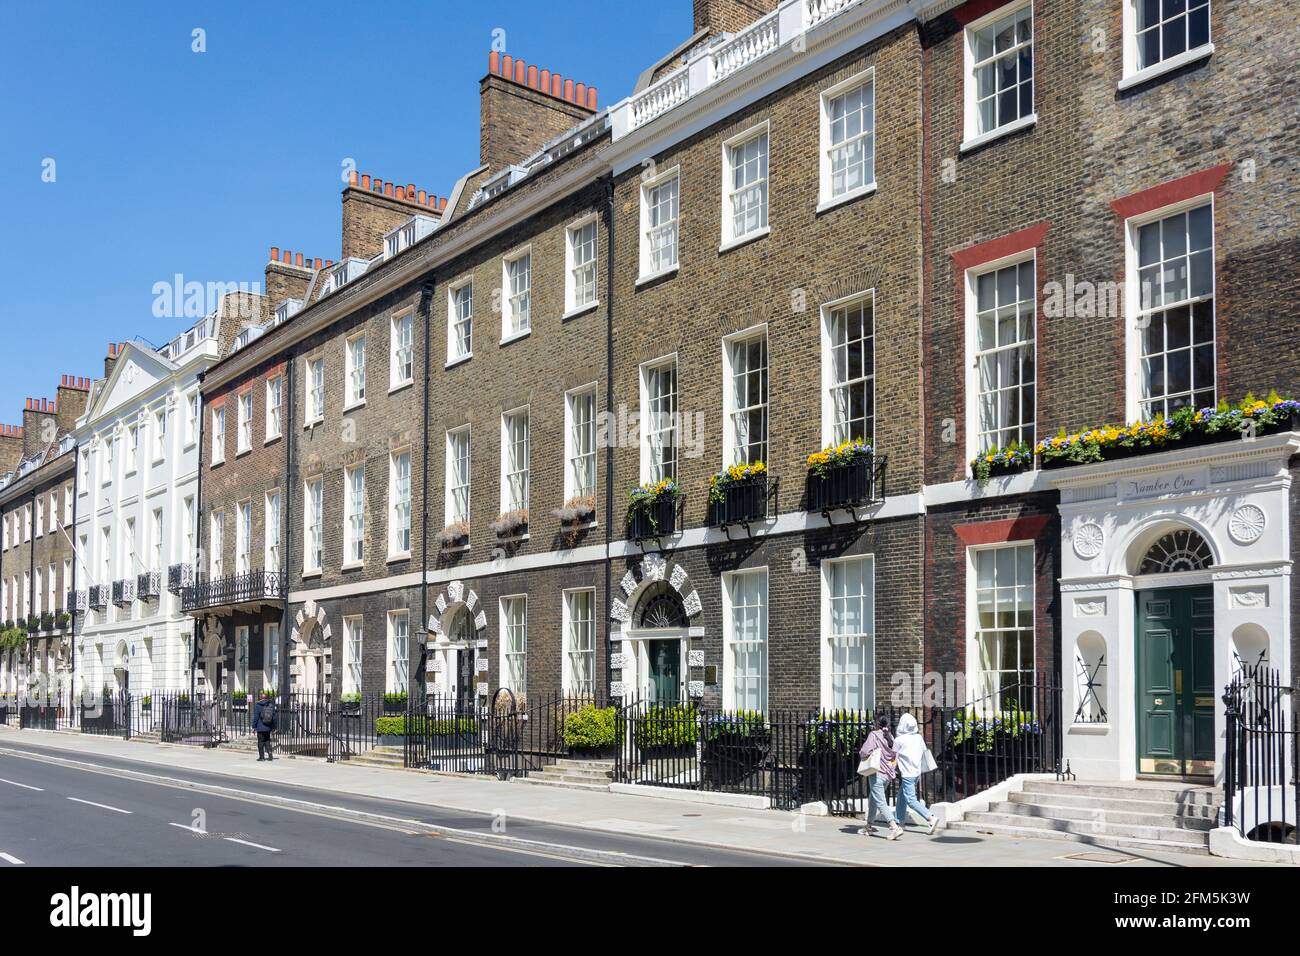 Maisons de ville géorgiennes, Bedford Square, Bloomsbury, London Borough of Camden, Greater London, Angleterre, Royaume-Uni Banque D'Images